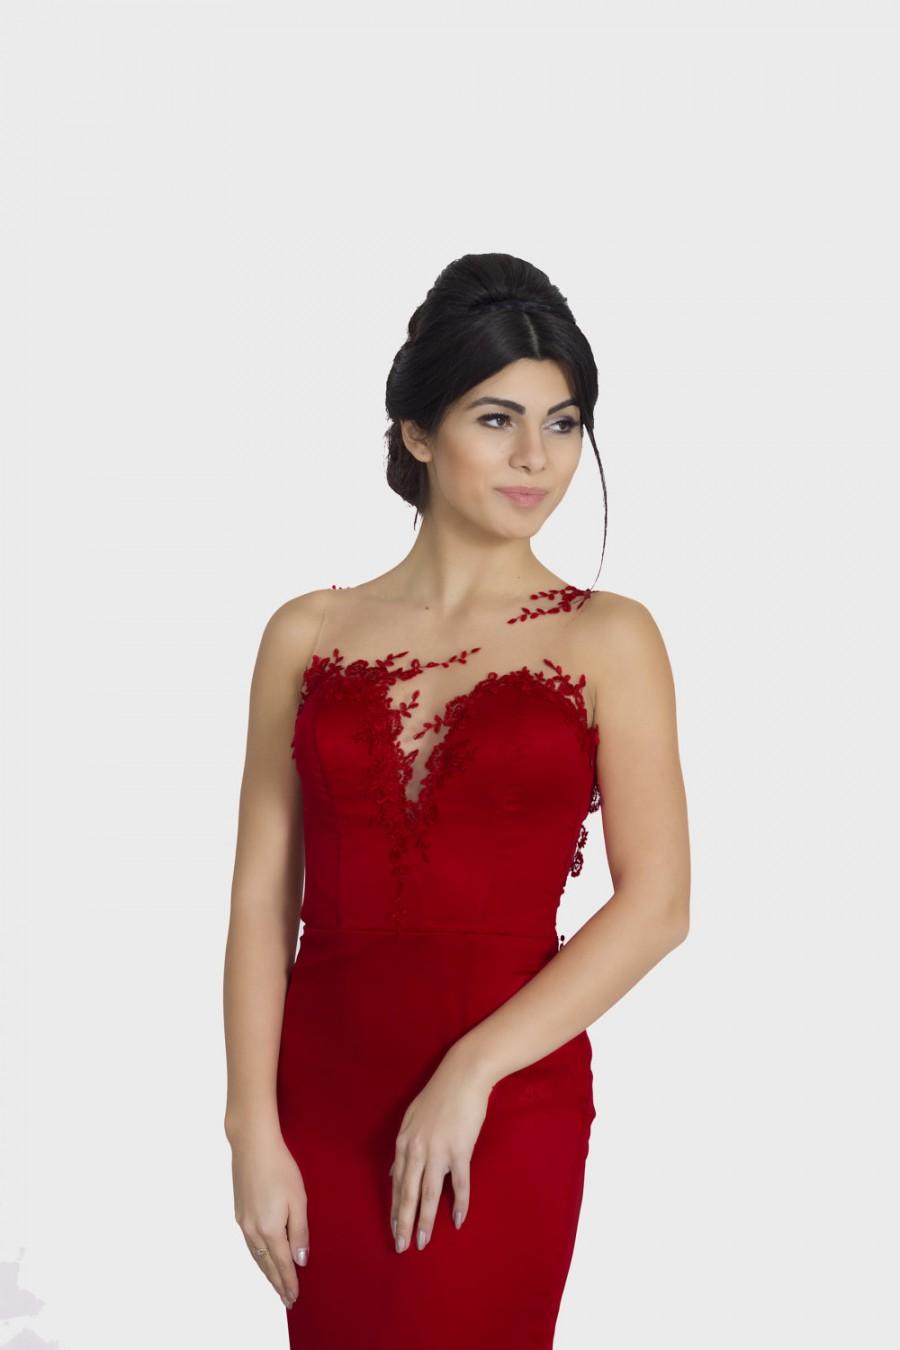 red designer cocktail dress